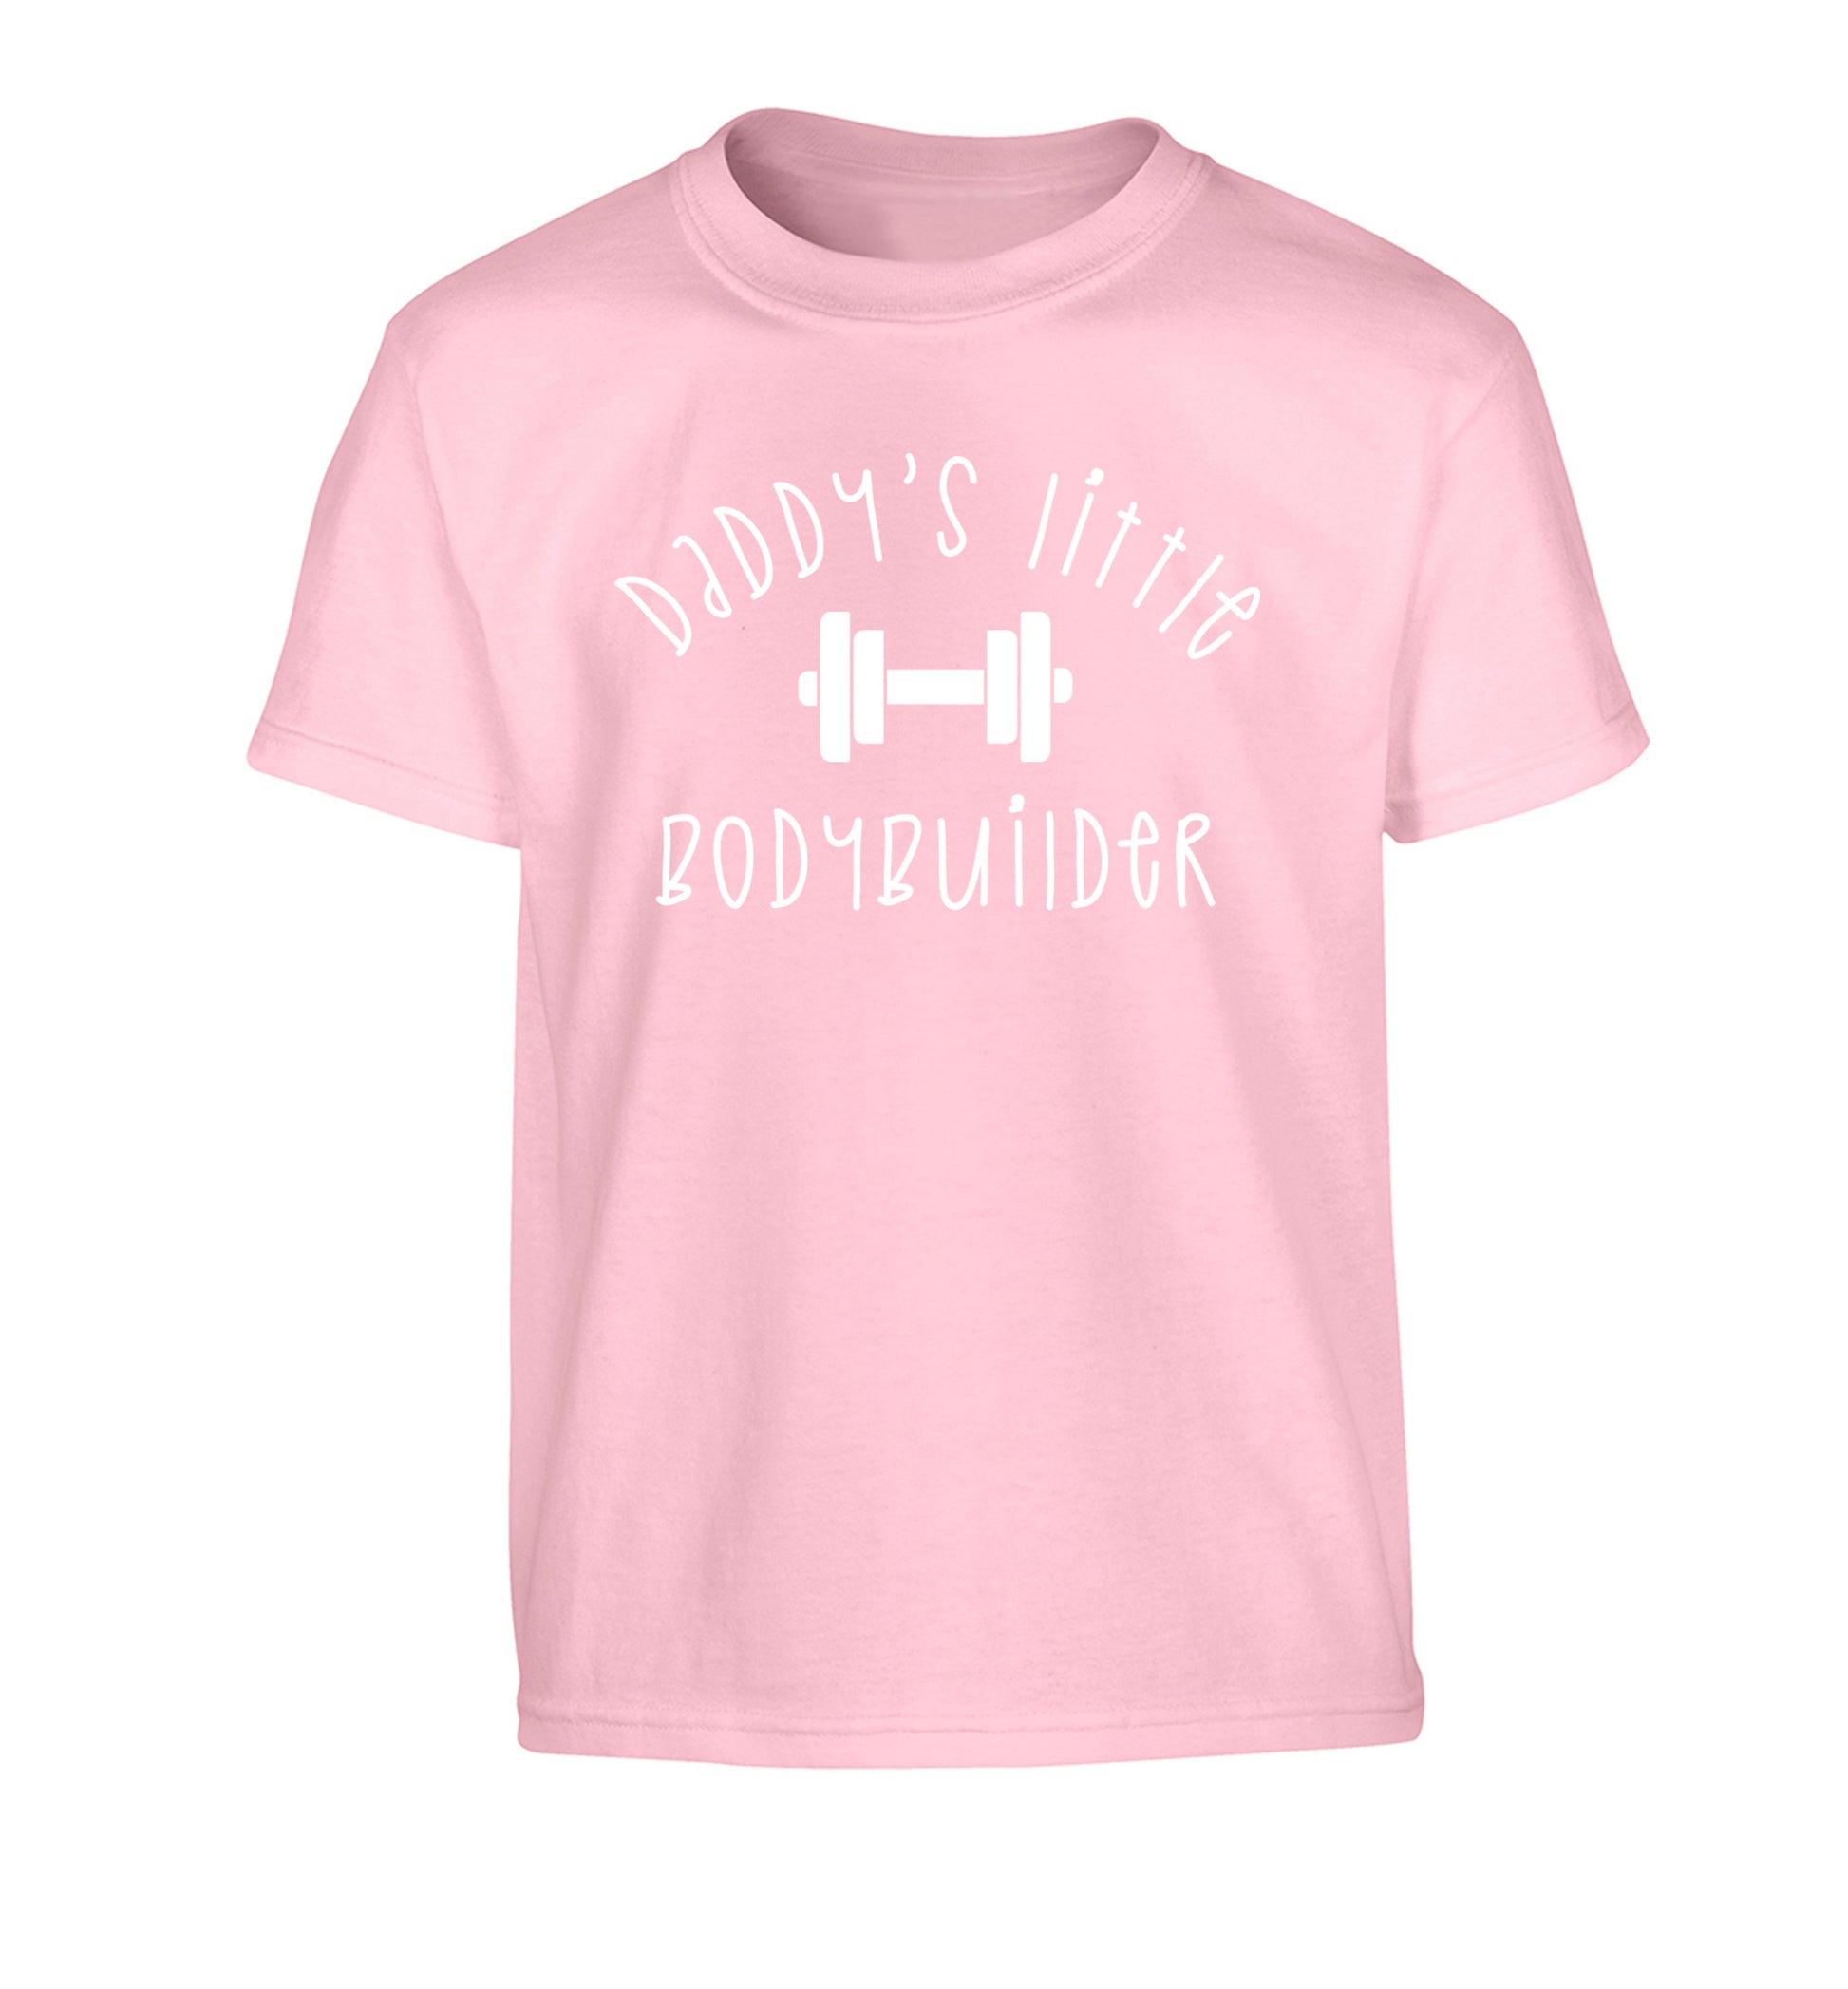 Daddy's little bodybuilder Children's light pink Tshirt 12-14 Years